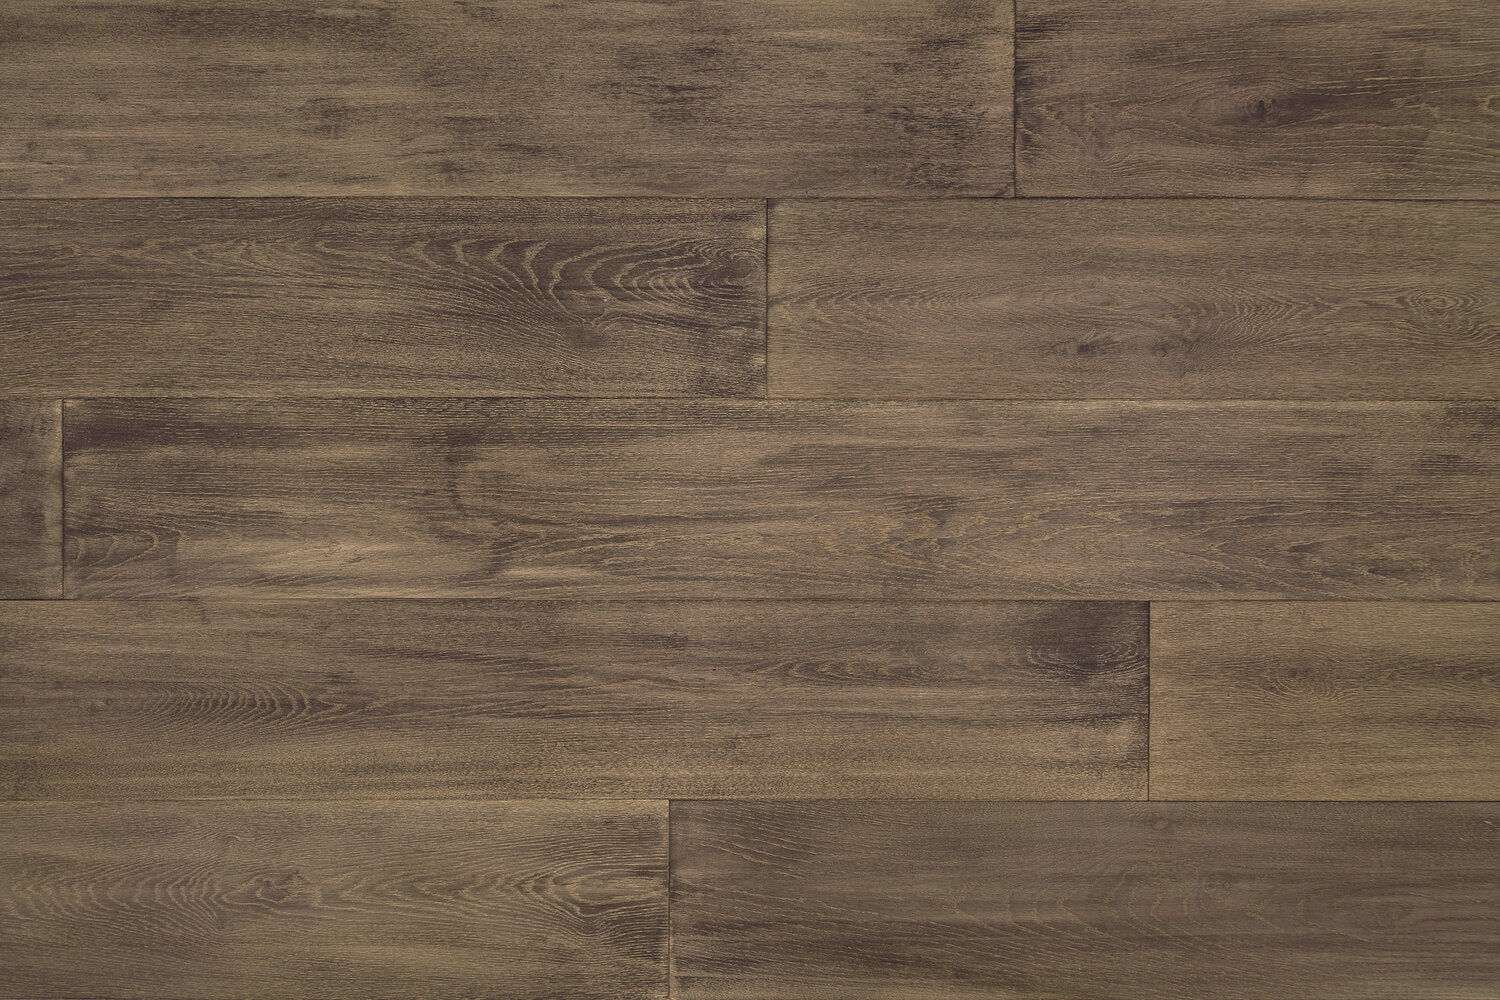 surface group artisan en bois brittany nightmist white oak engineered hardwood flooring plank straight.jpg